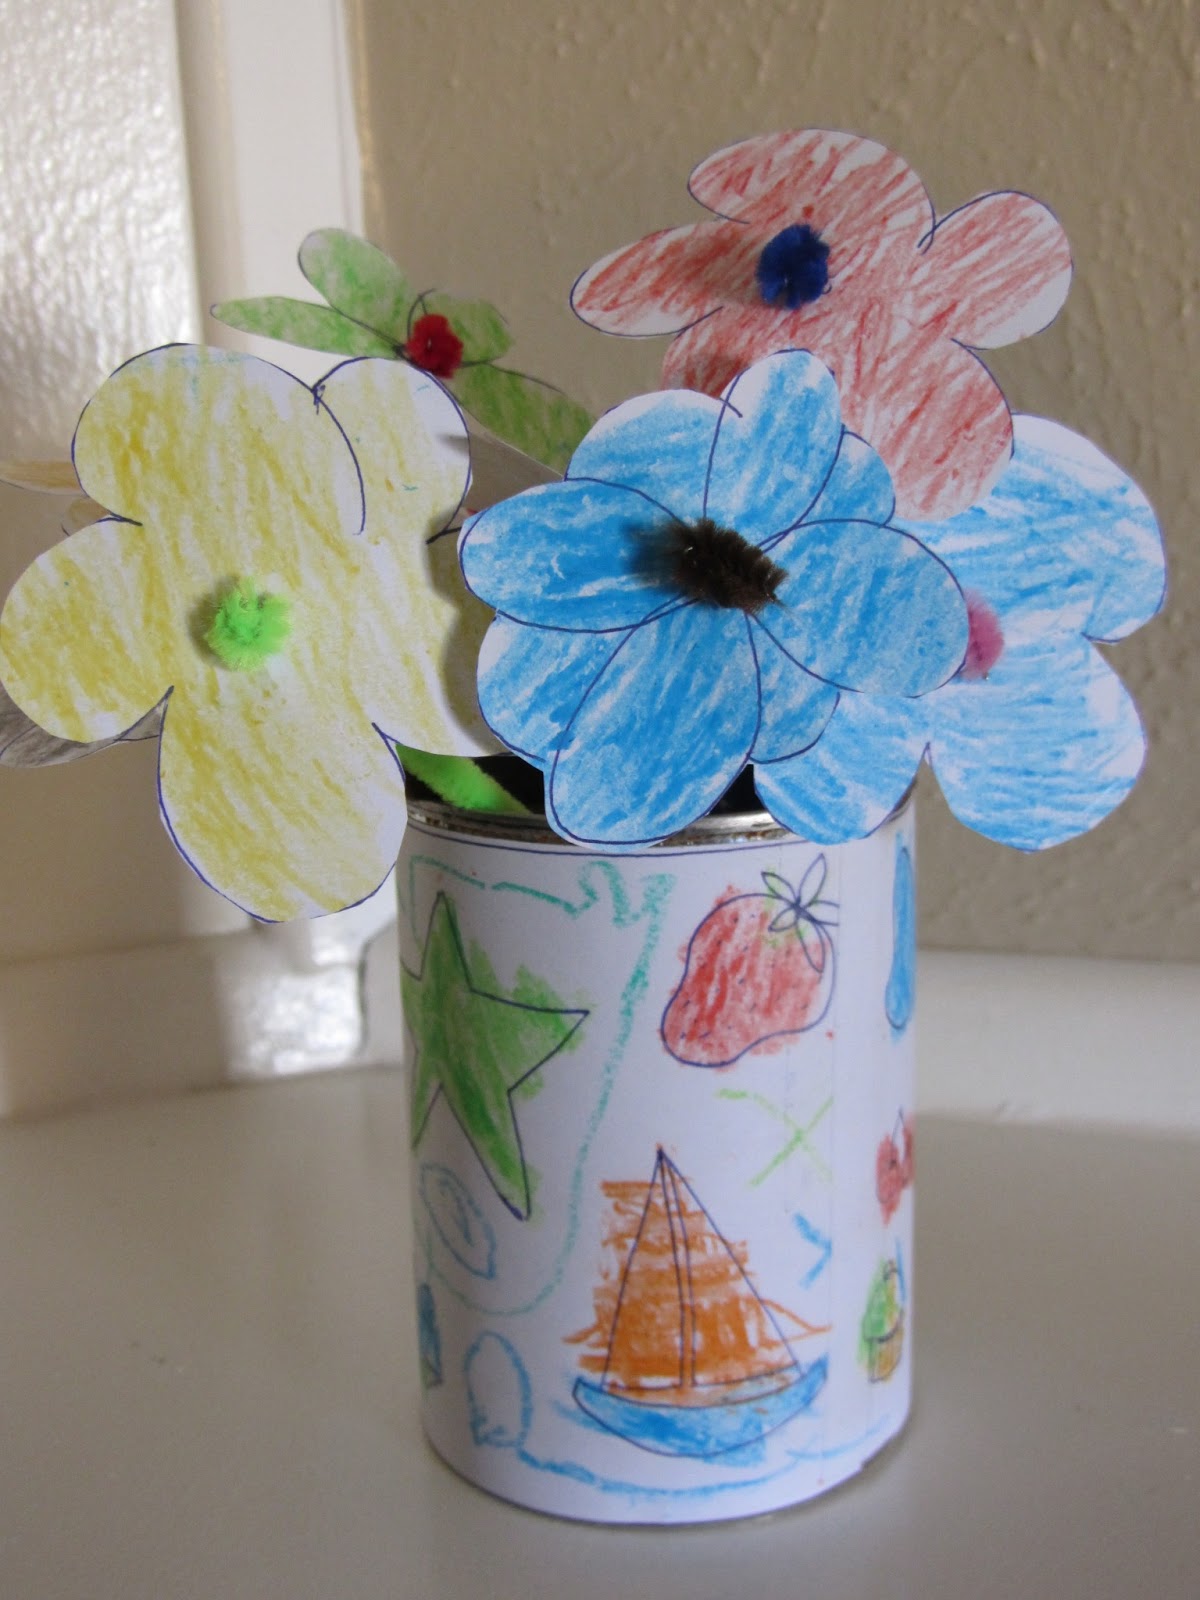 Amanda G. Whitaker: Flower and Vase Craft